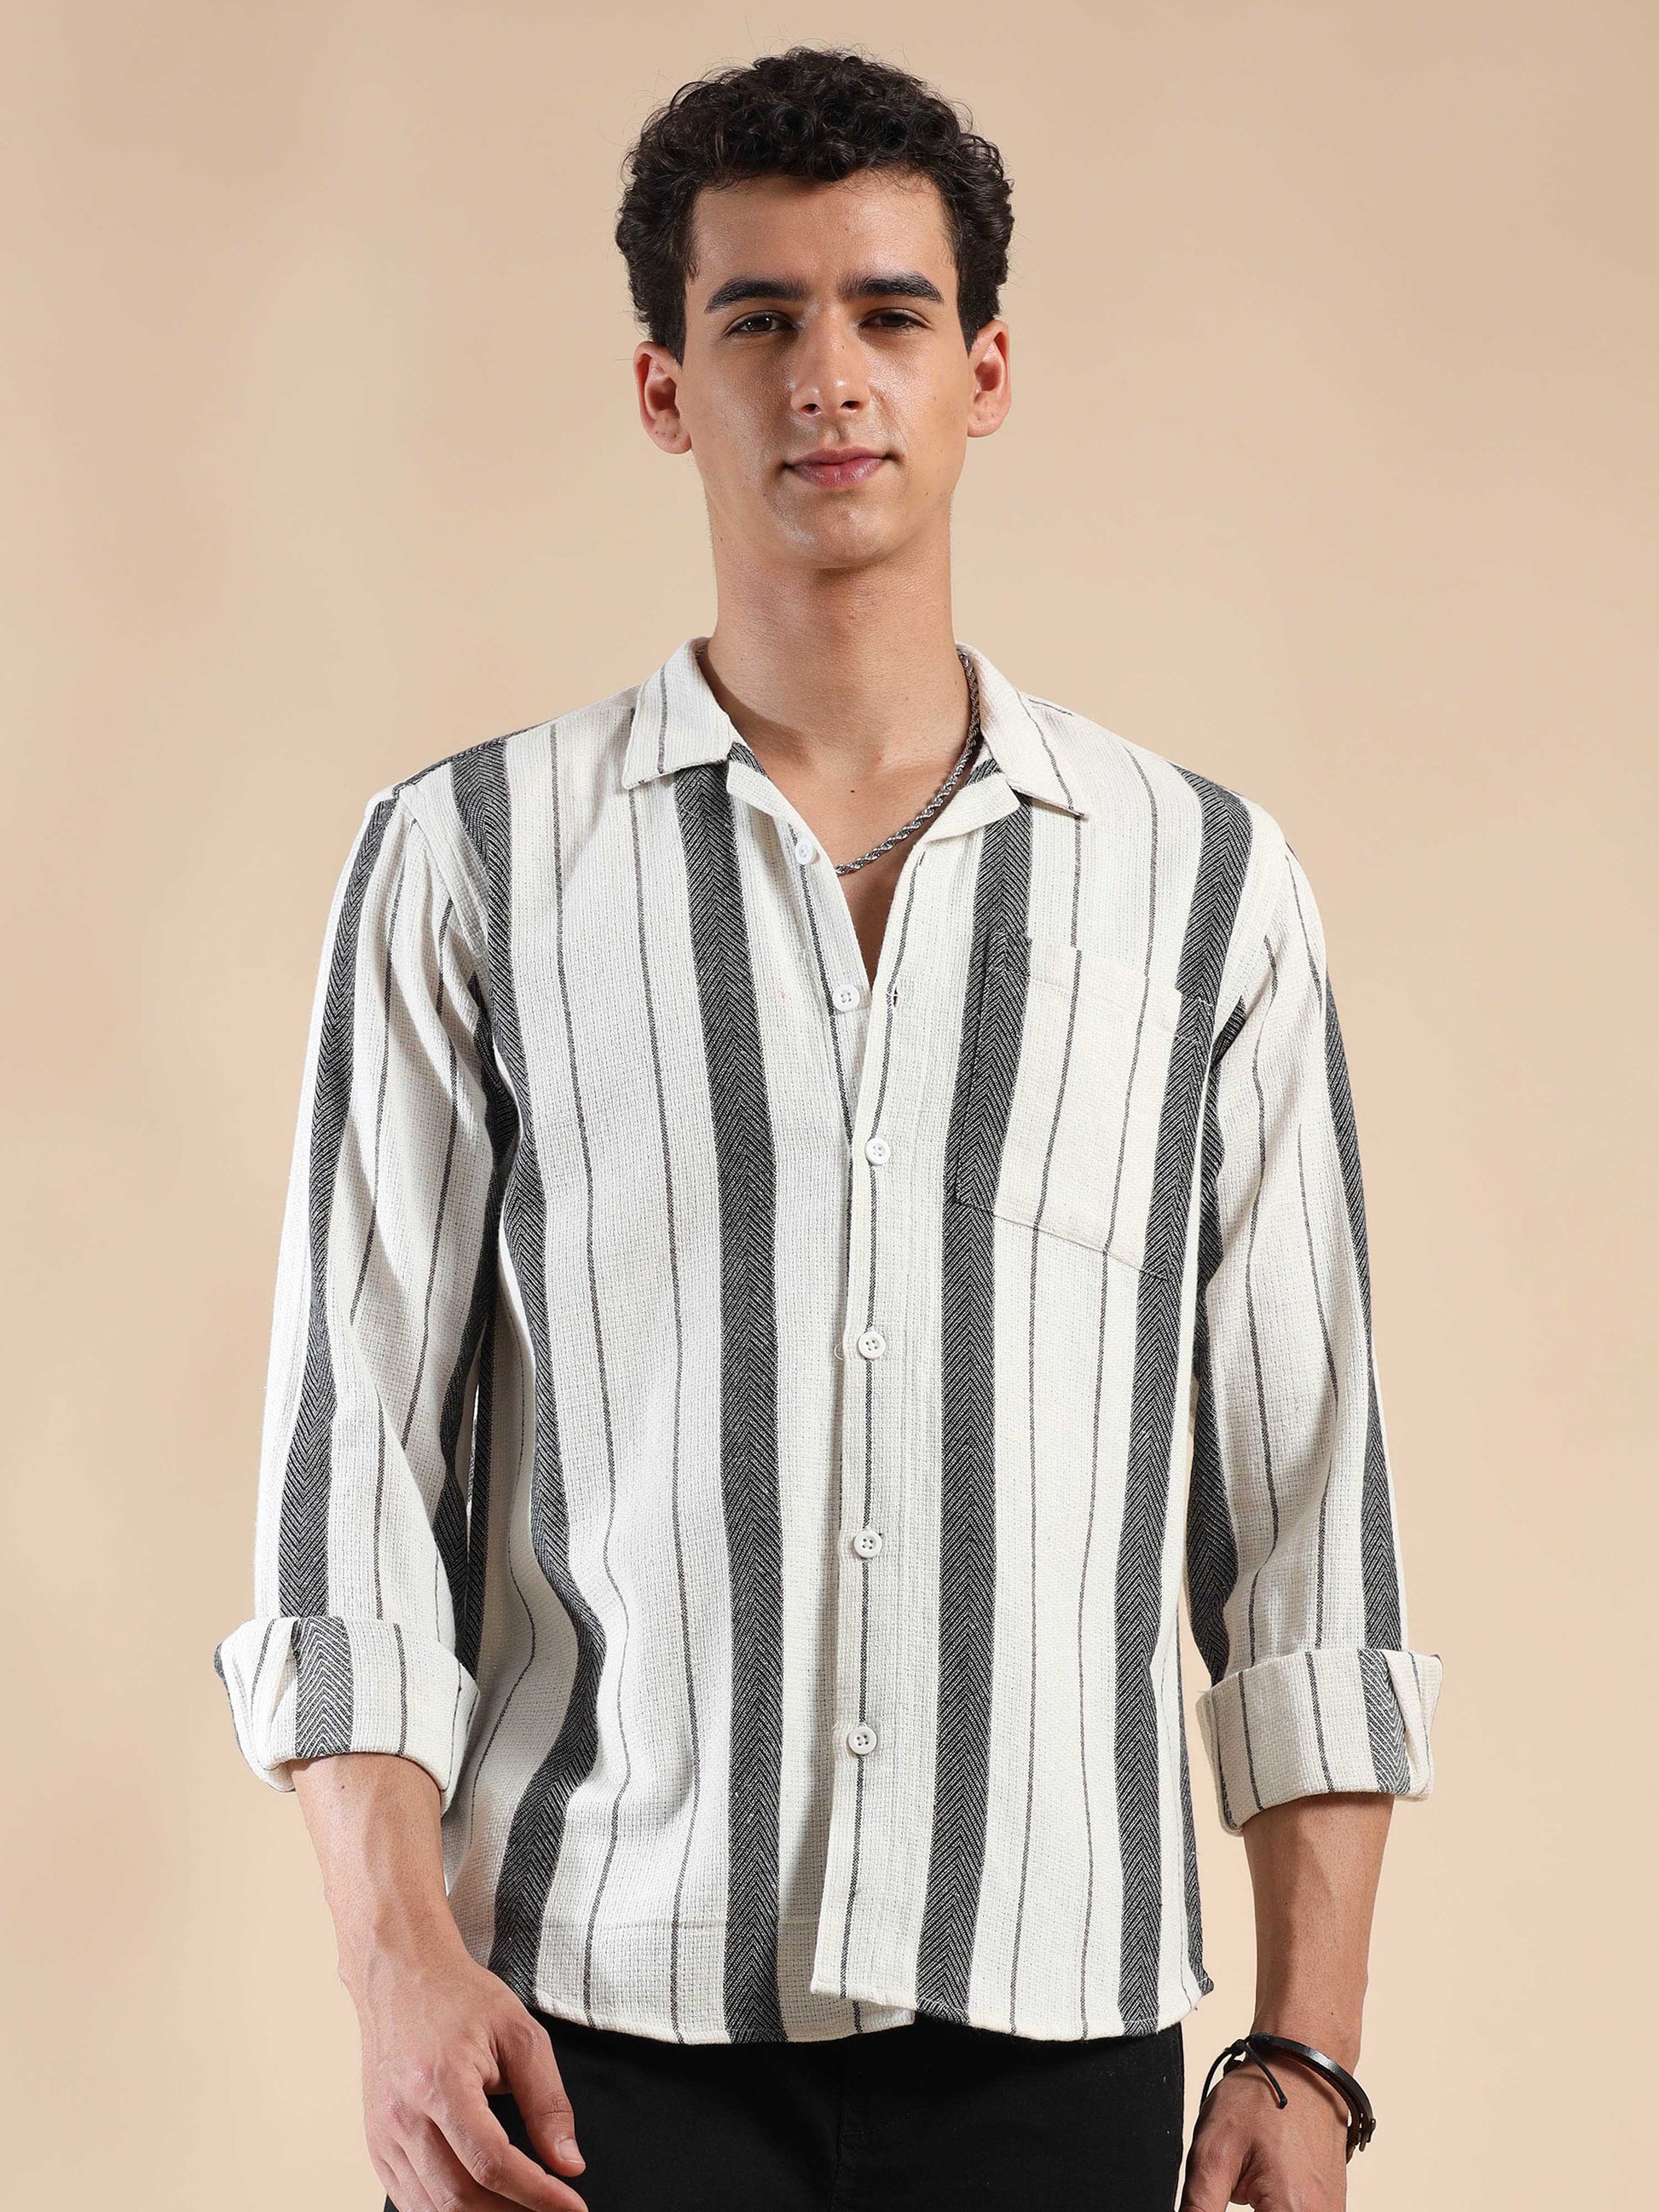 full sleeve black white striped shirt